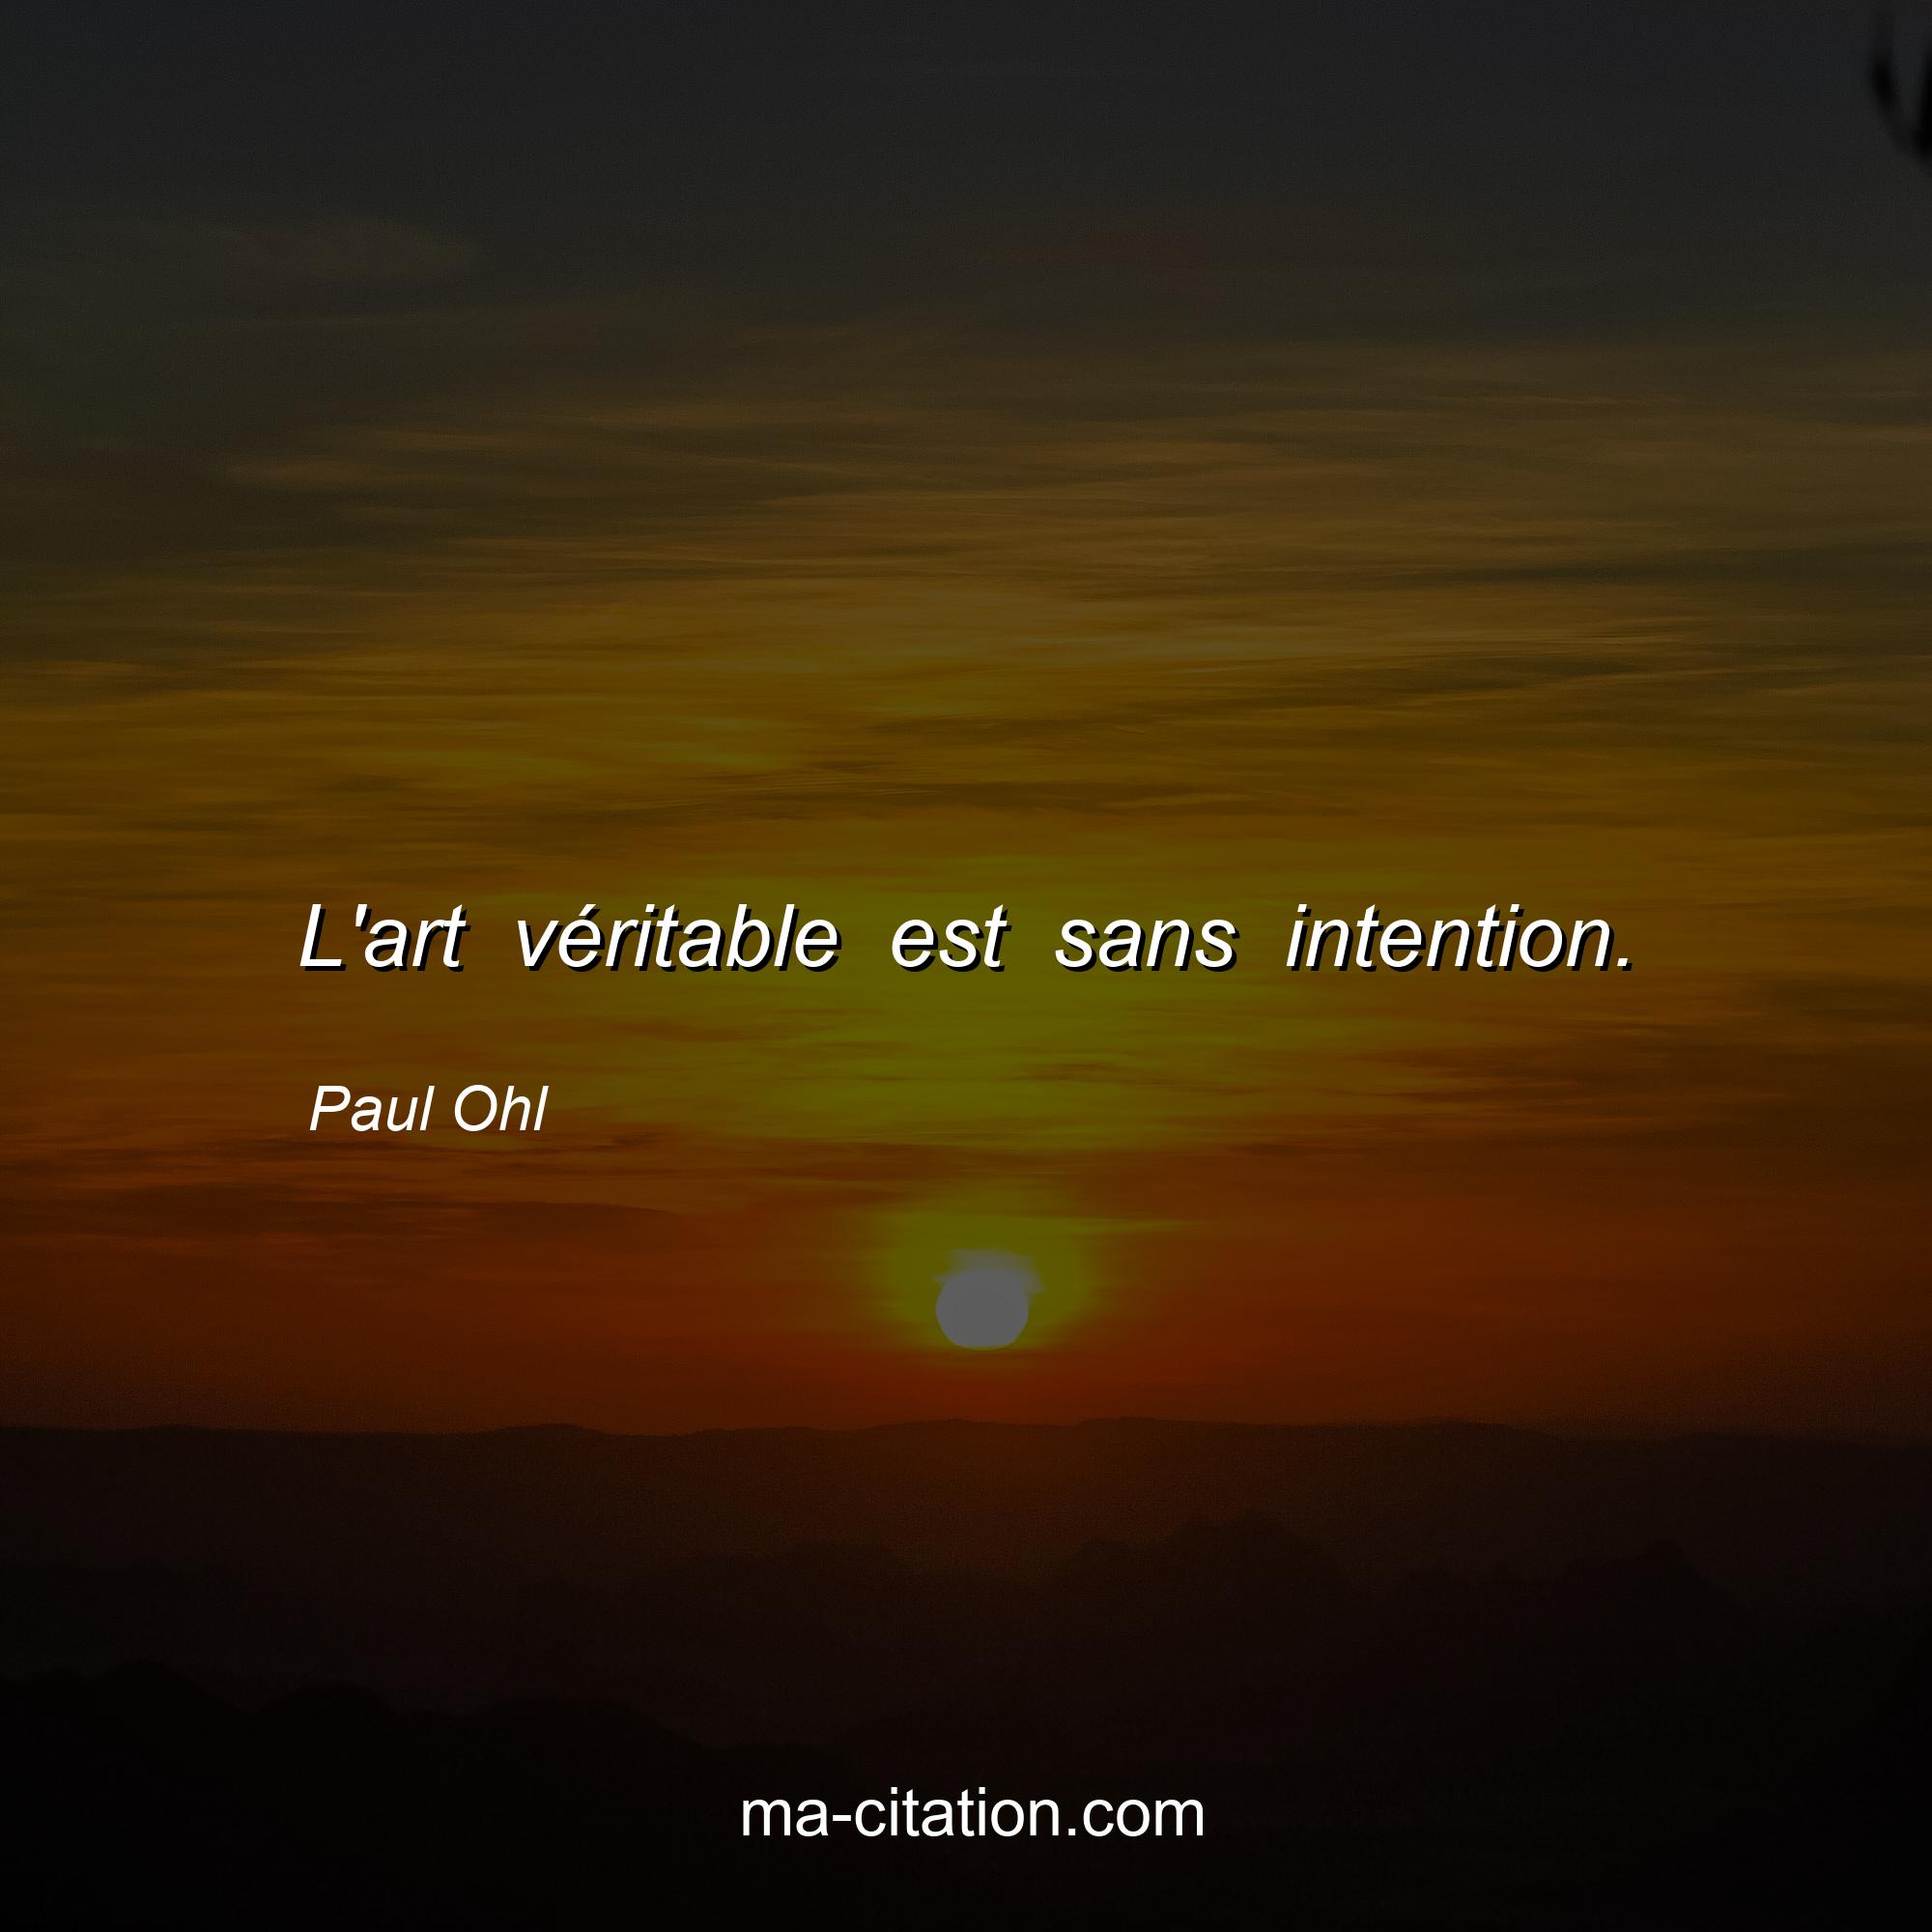 Paul Ohl : L'art véritable est sans intention.